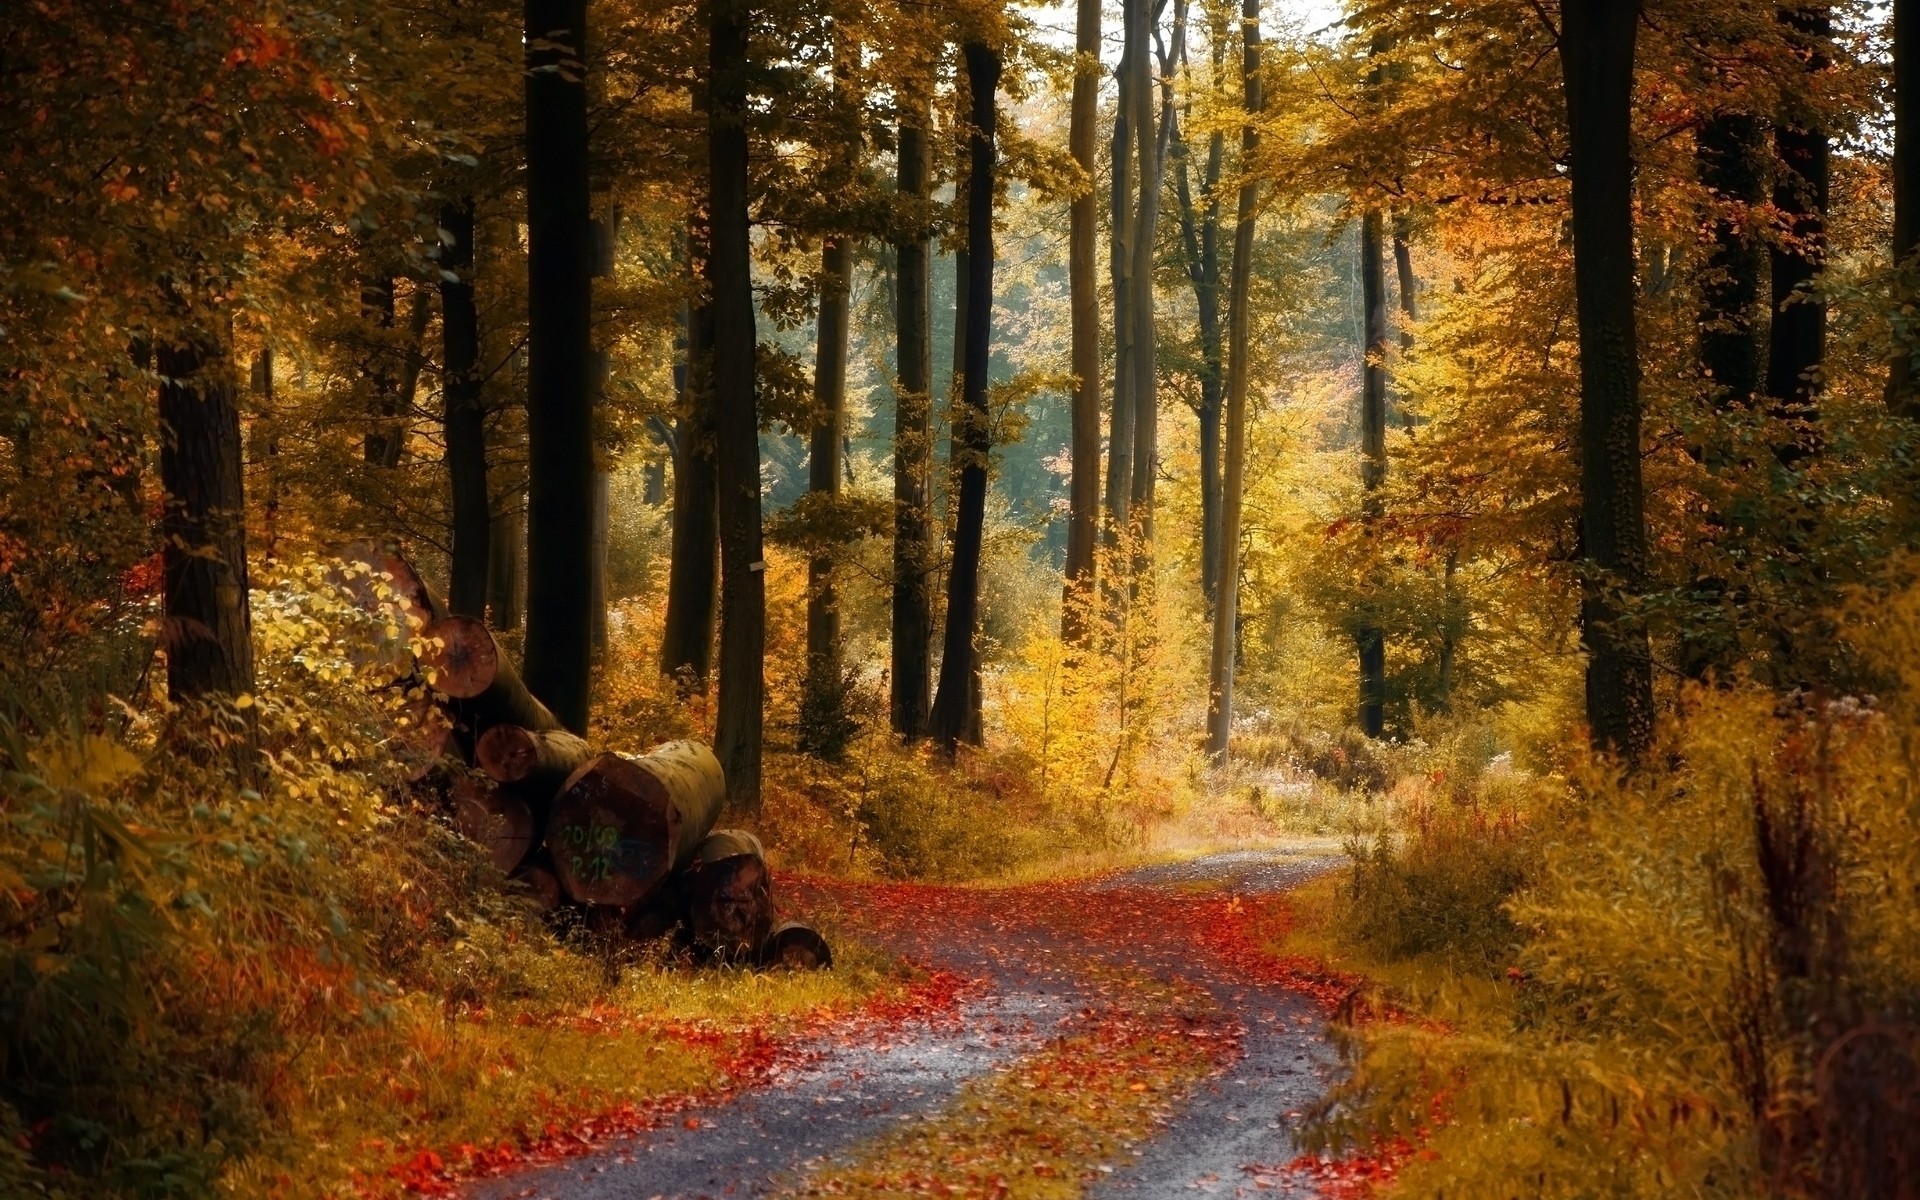 осень осень древесины лист дерево пейзаж парк живописный дневной свет дорога среды природа на открытом воздухе руководство кленовый свет сезон